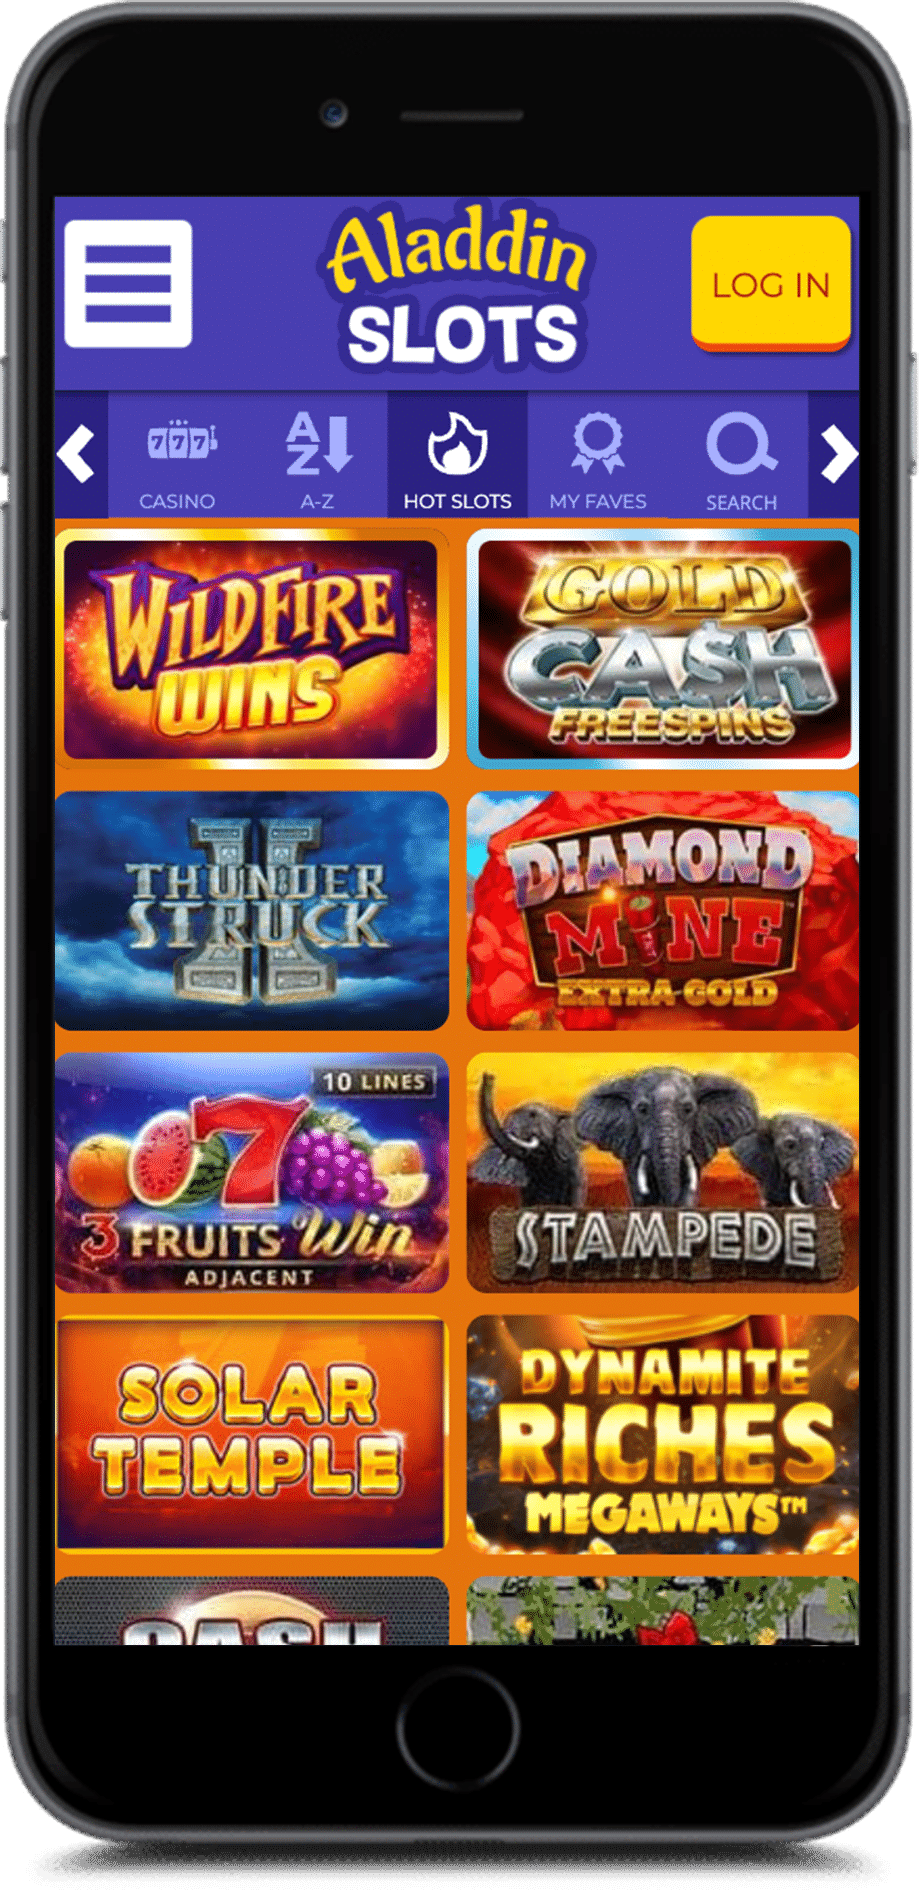 aladdinslots casino bonus